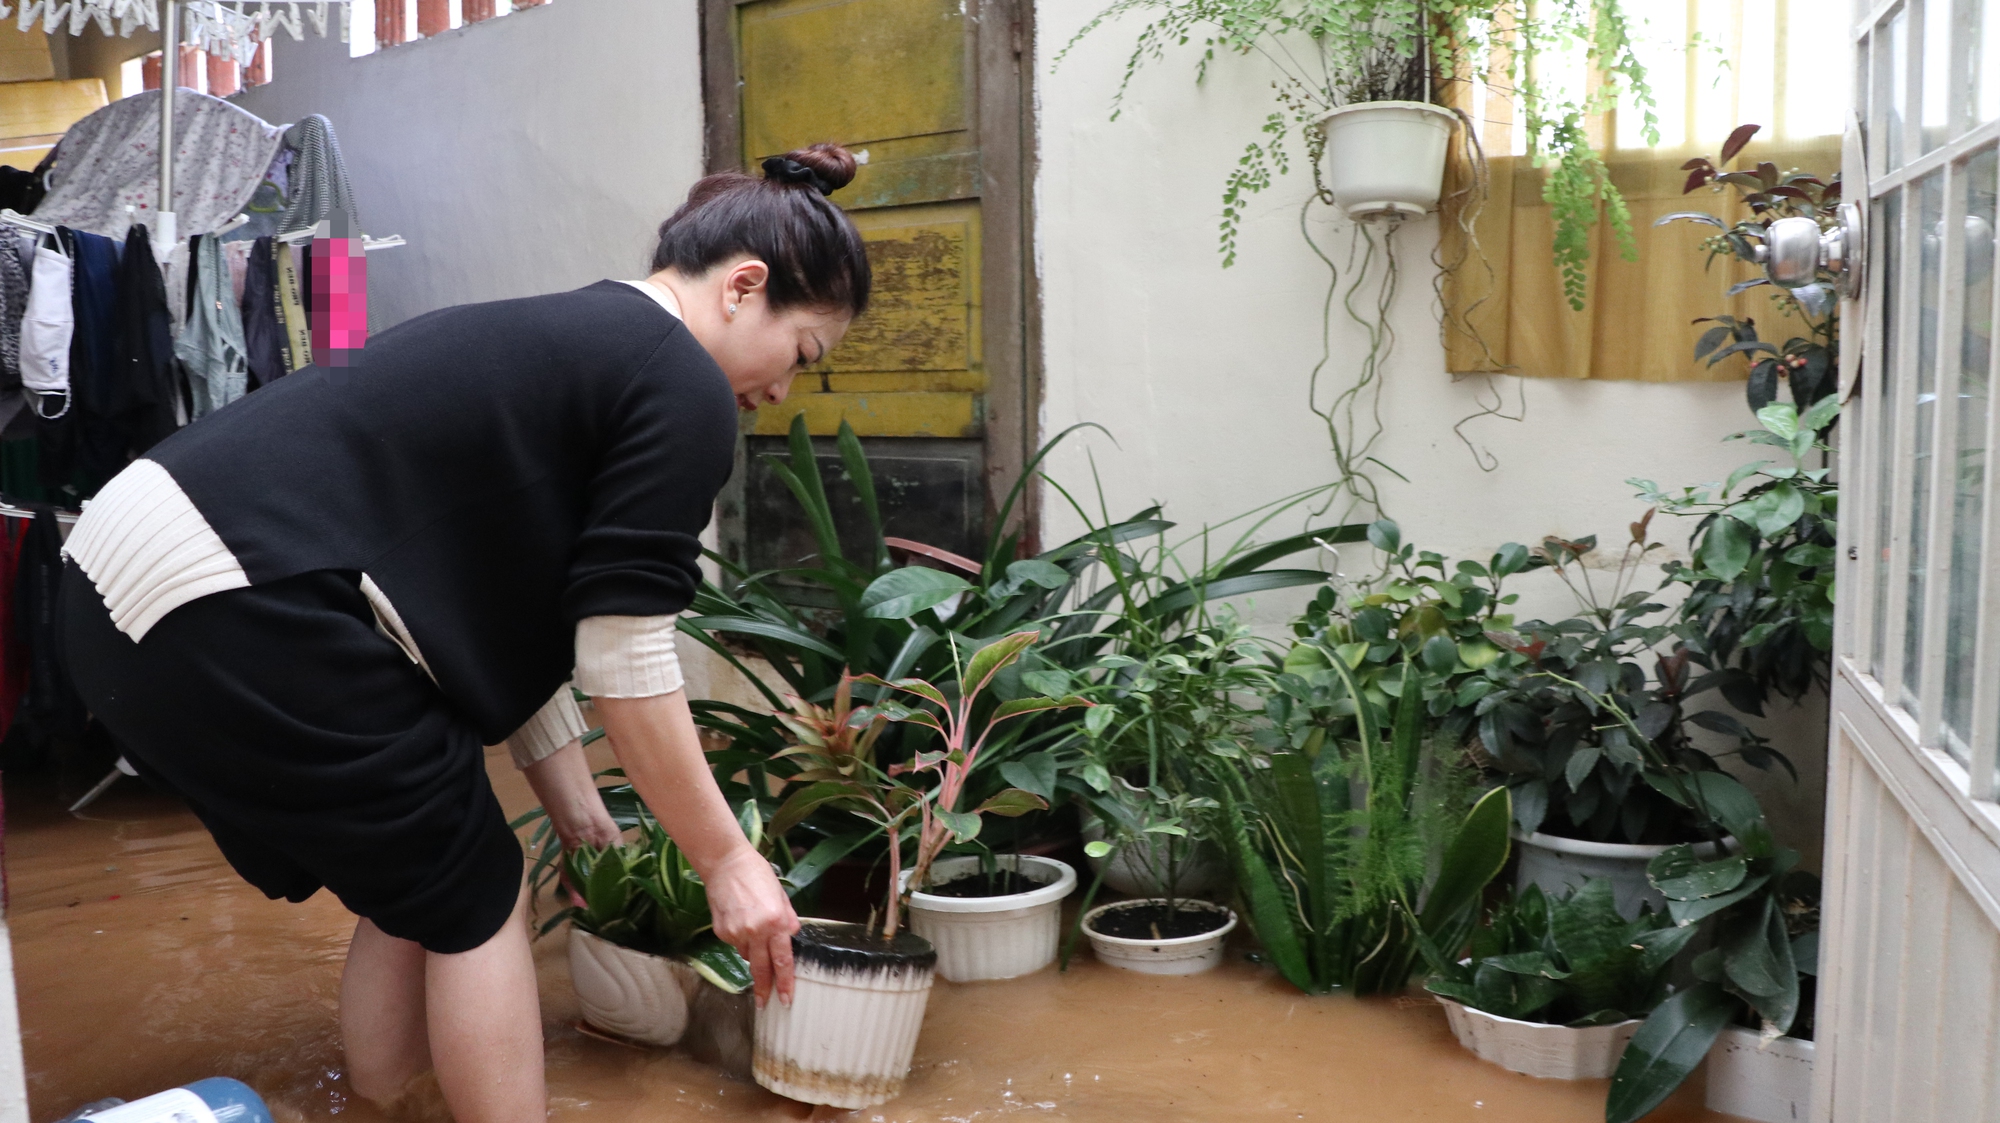 Ảnh: Người dân đường Phan Đình Phùng ở Đà Lạt bì bõm dọn nhà sau cơn mưa lớn - Ảnh 4.